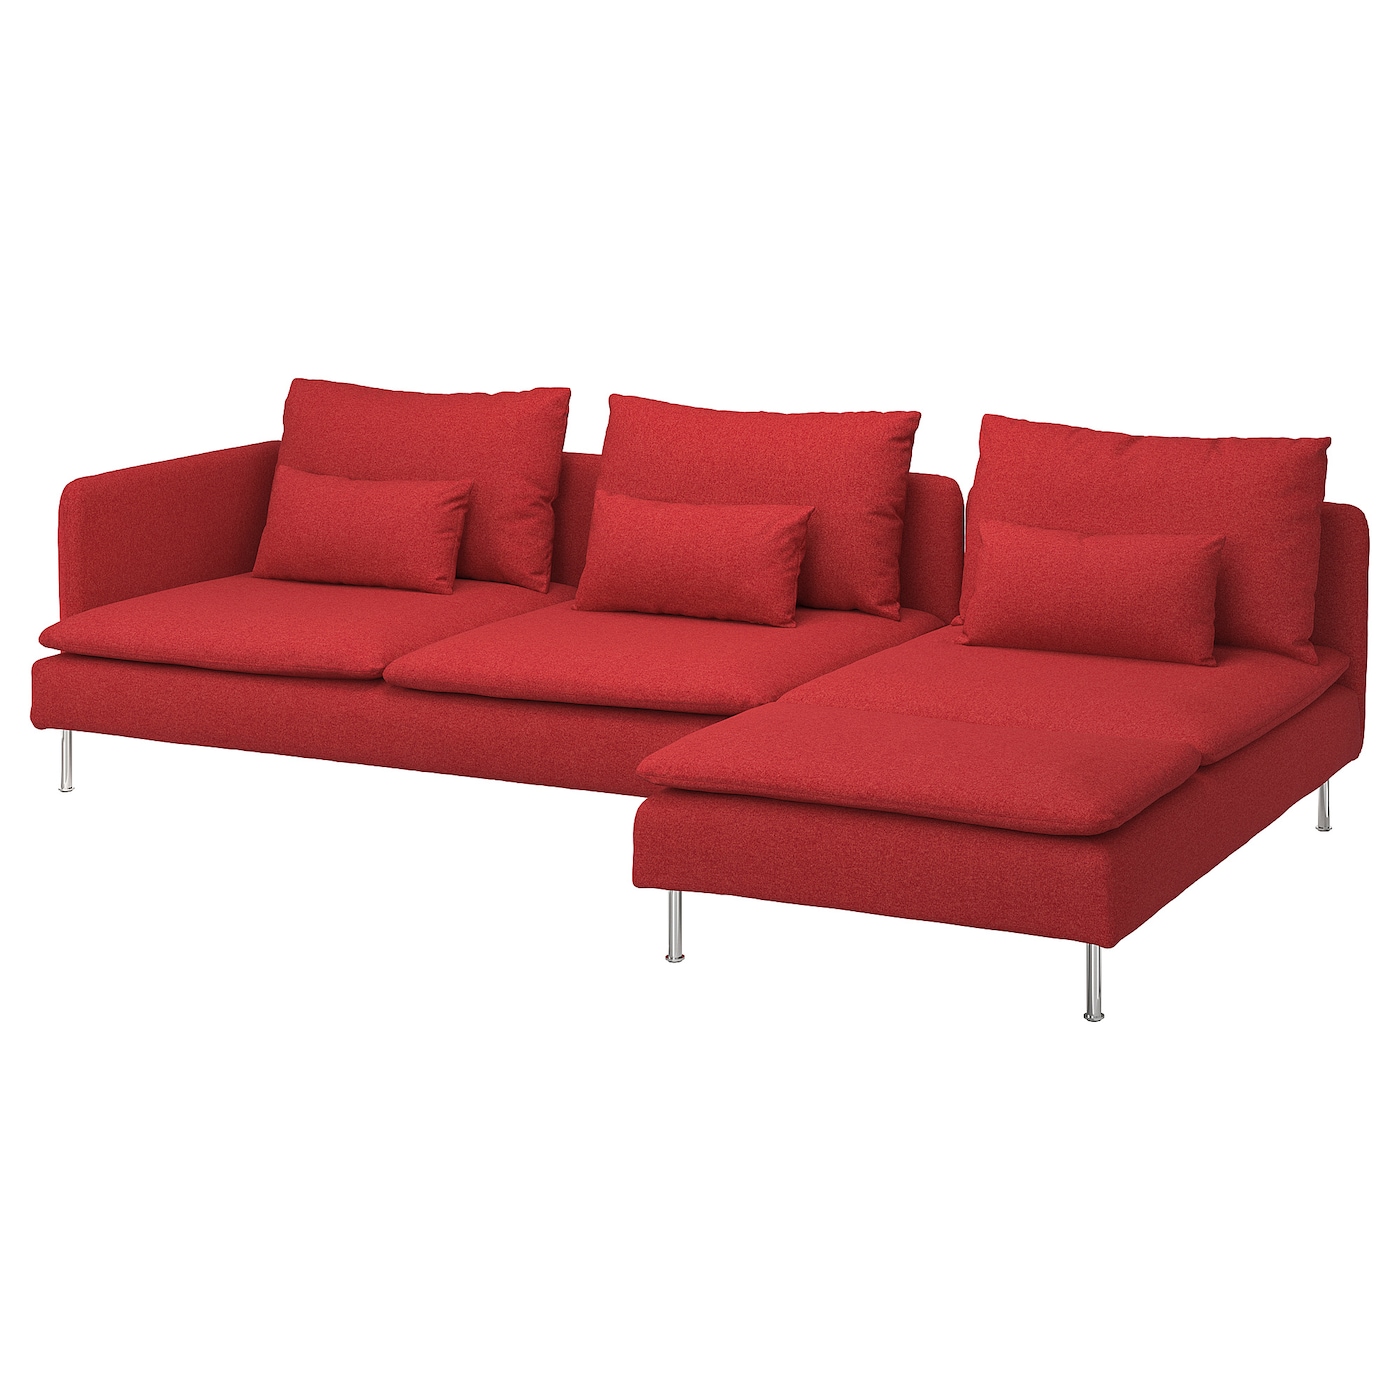 СЁДЕРХАМН 4-местный диван + диван, створка Тонеруд/красный SODERHAMN IKEA мягкая игрушка диван город не раскладной